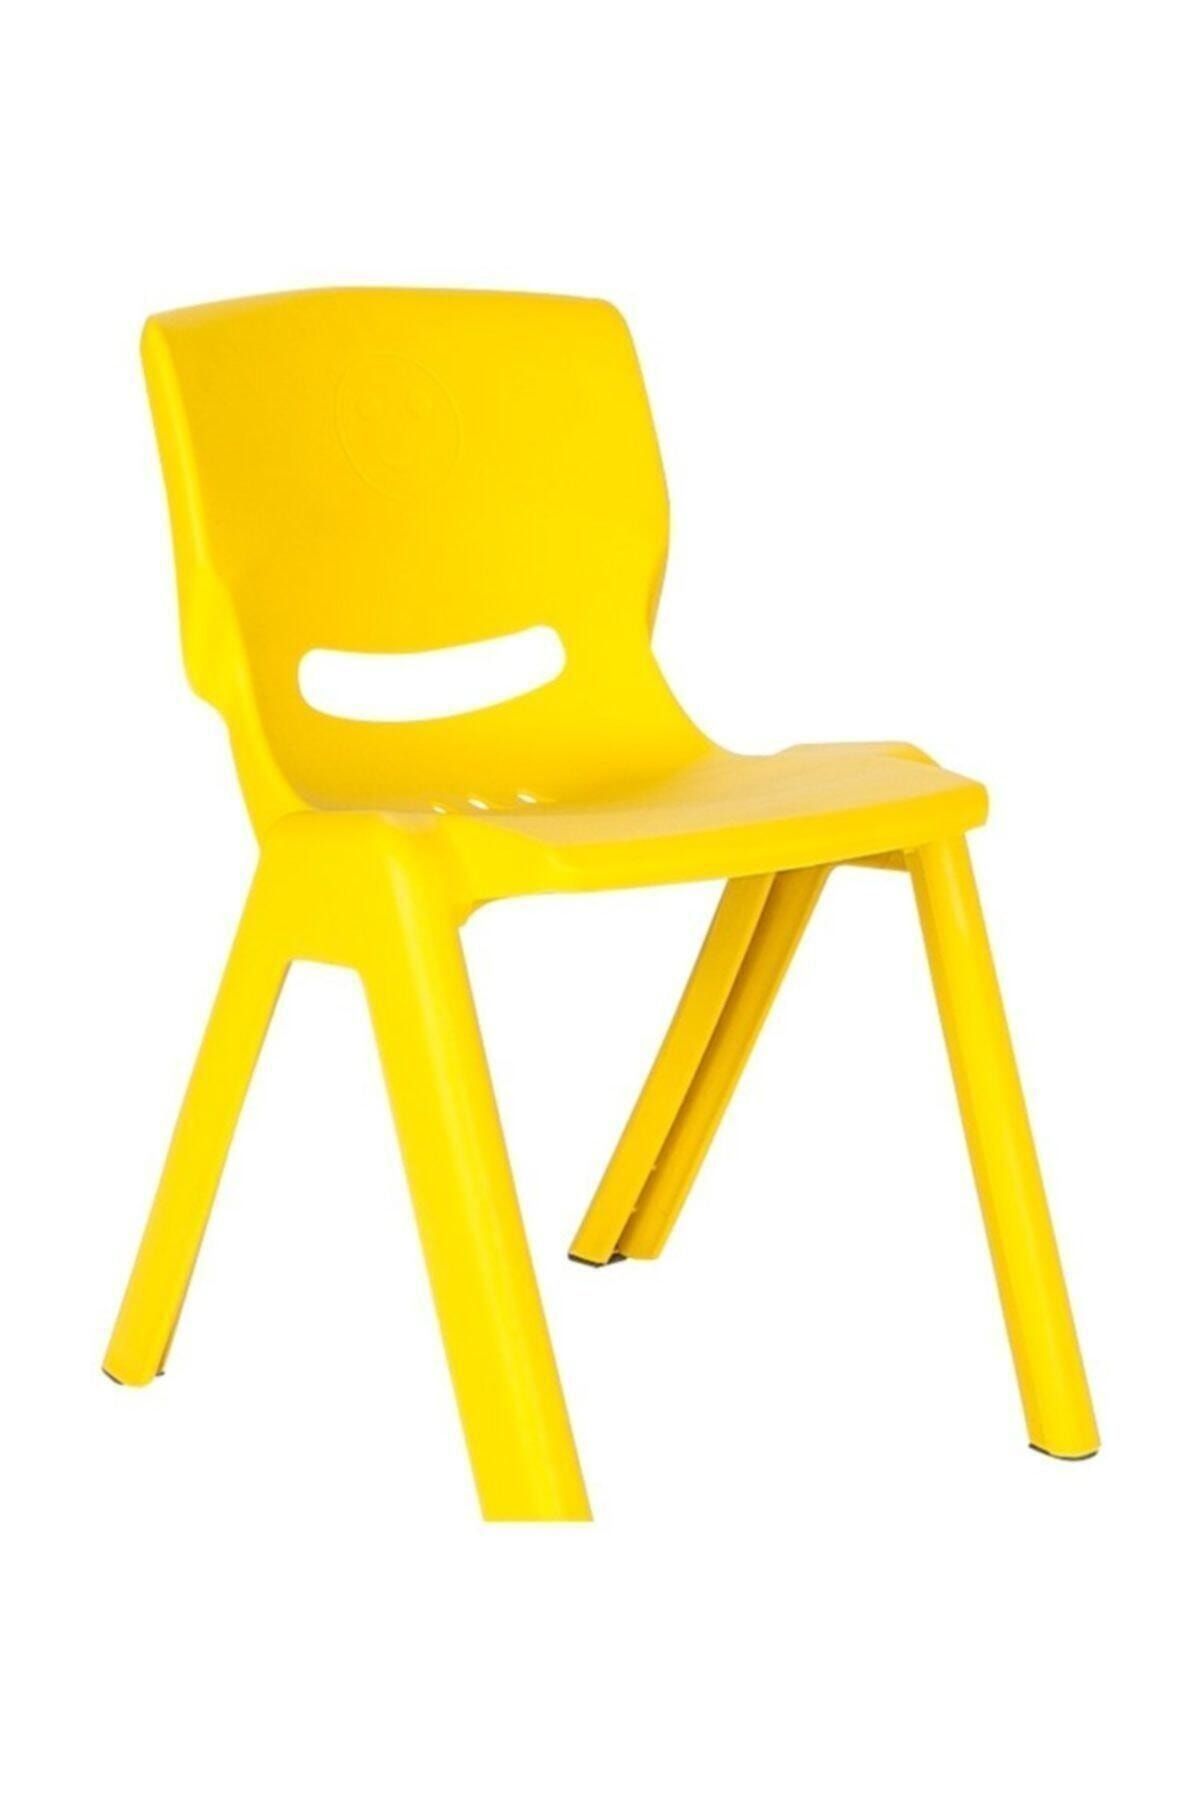 PİLSAN Happy Sandalye (Sarı)